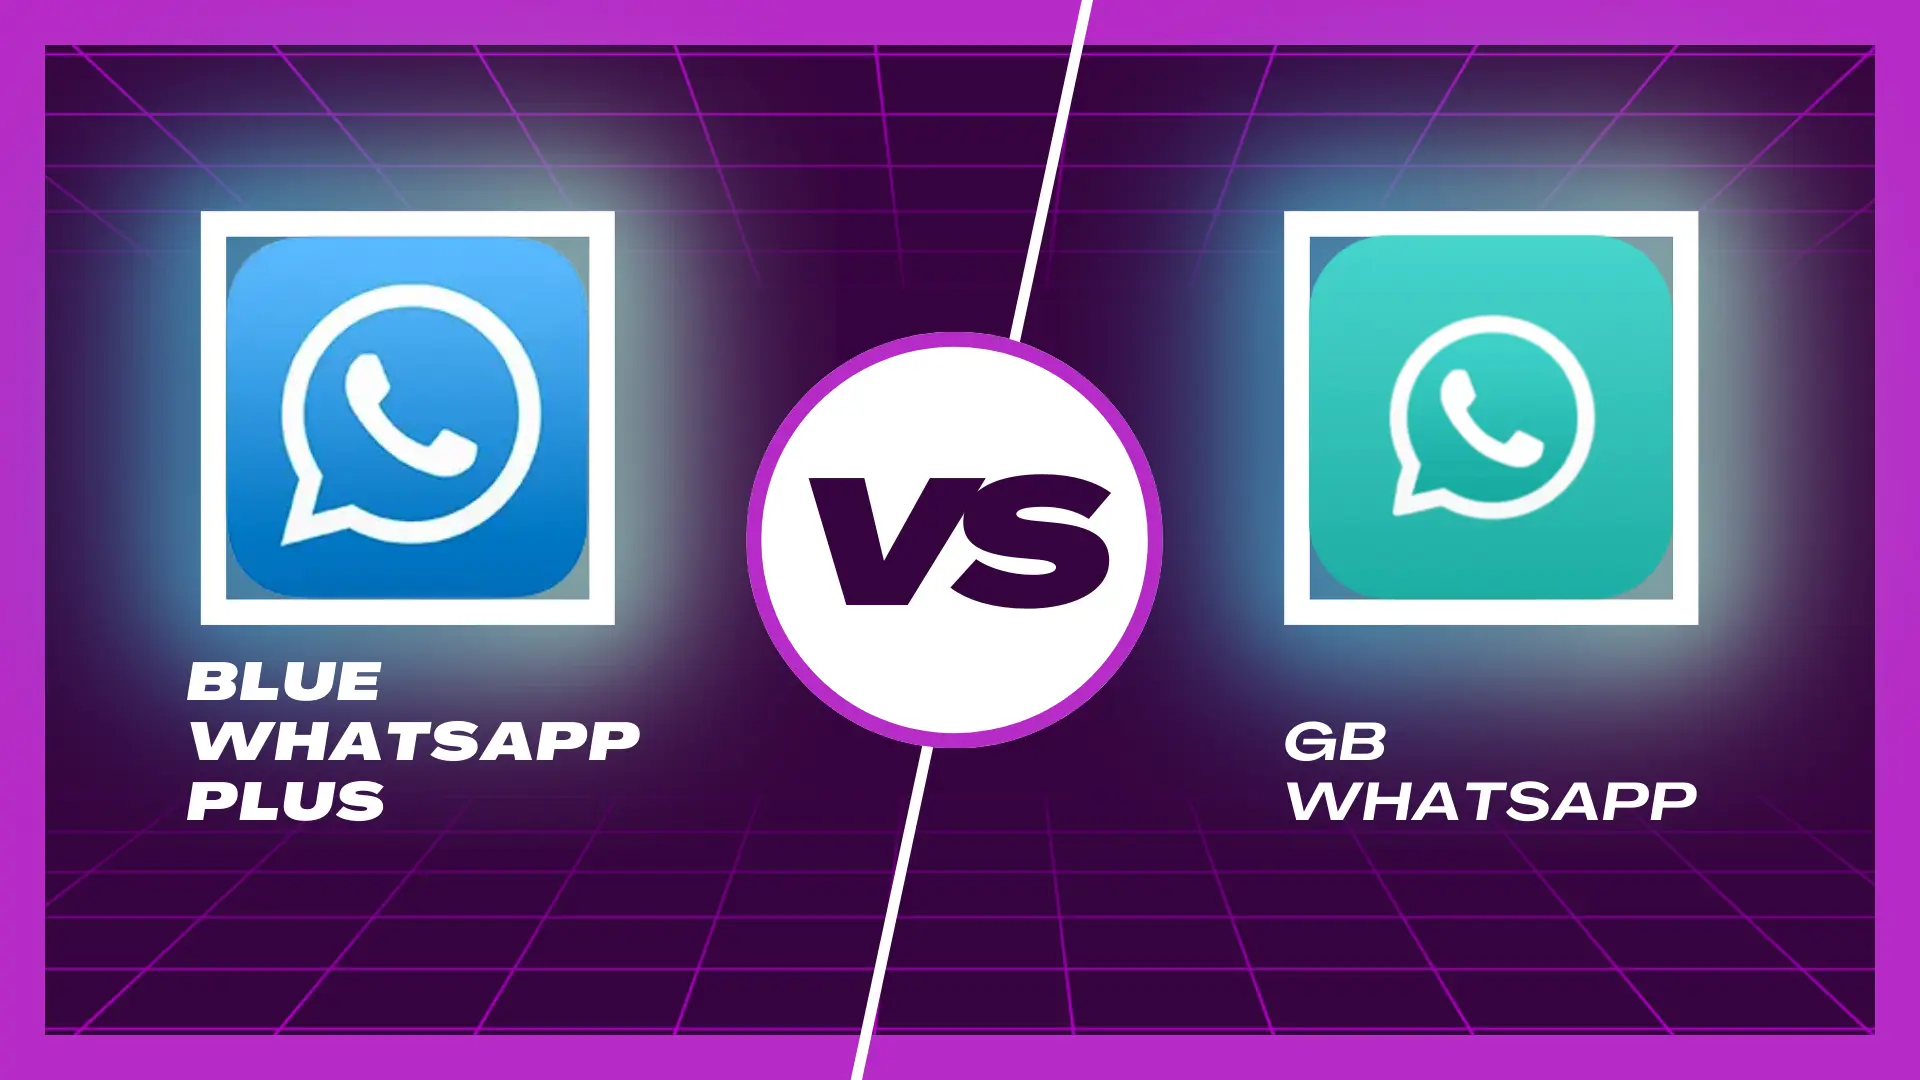 blue whatsapp plus vs gb whatsapp